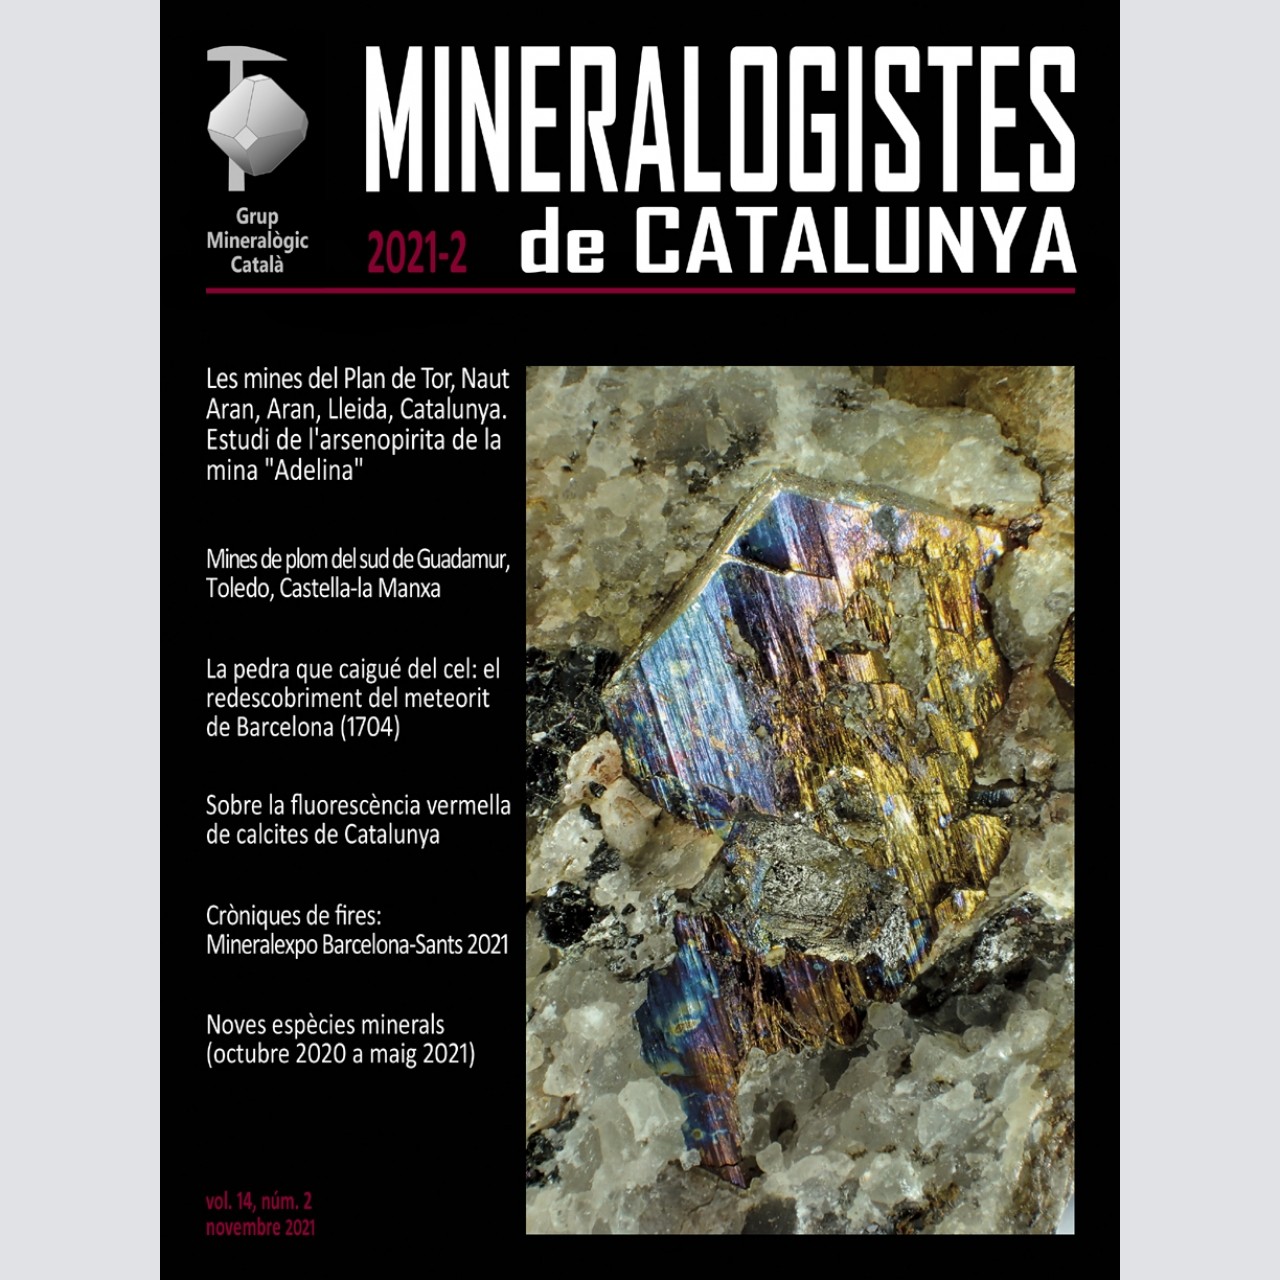 <em>Mineralogistes de Catalunya</em> (2021-2)